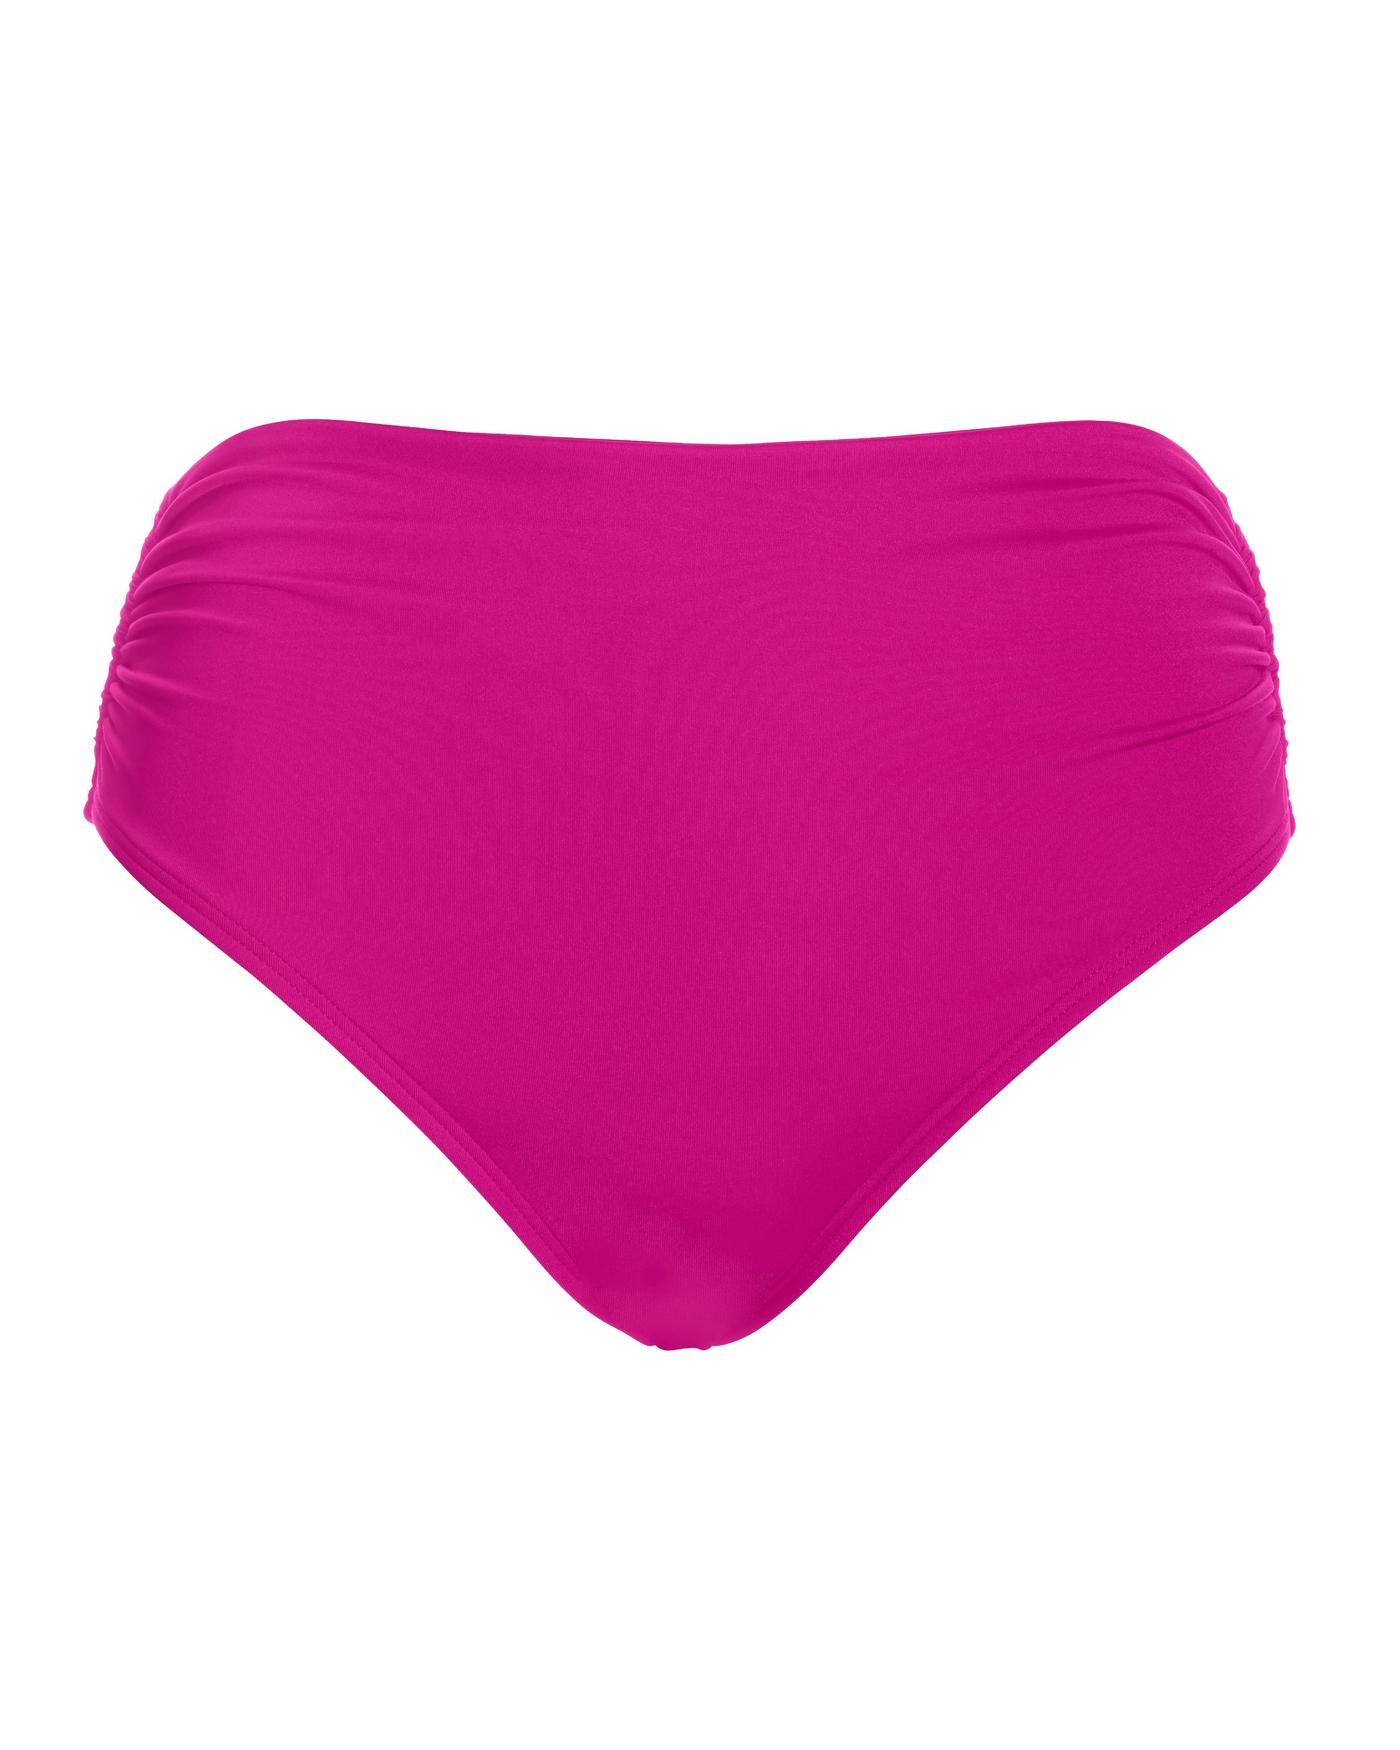 J.Crew: High-rise Full-coverage Bikini Bottom In Pink Limone Print